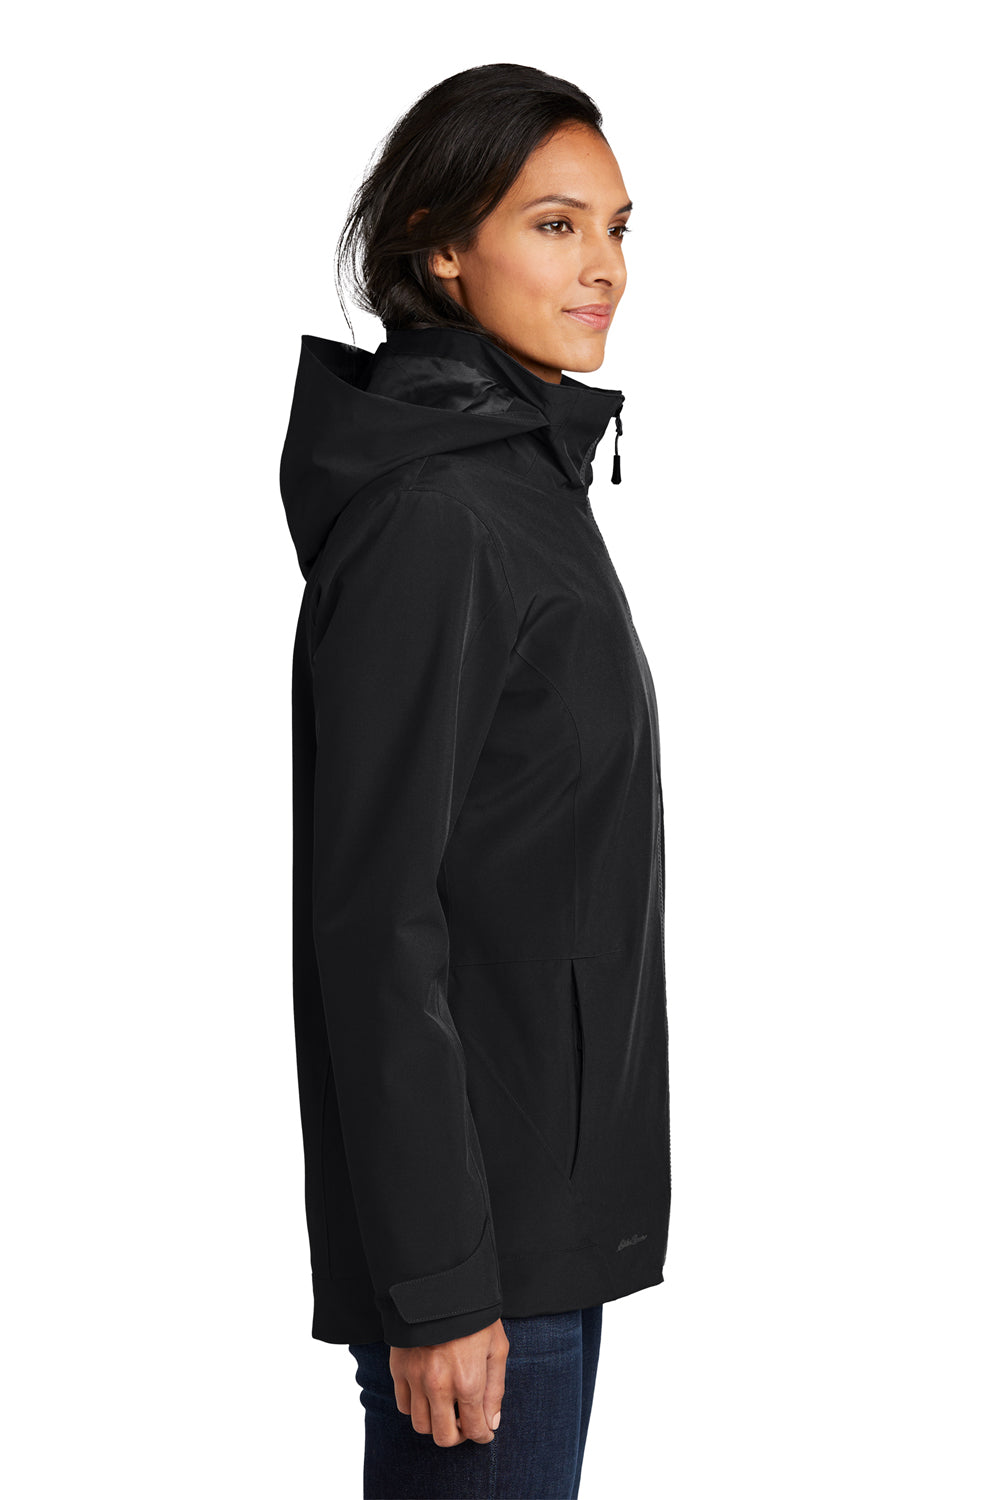 Eddie Bauer EB657 Womens WeatherEdge 3-in-1 Water Resistant Full Zip Hooded Jacket Black/Storm Grey Model Side